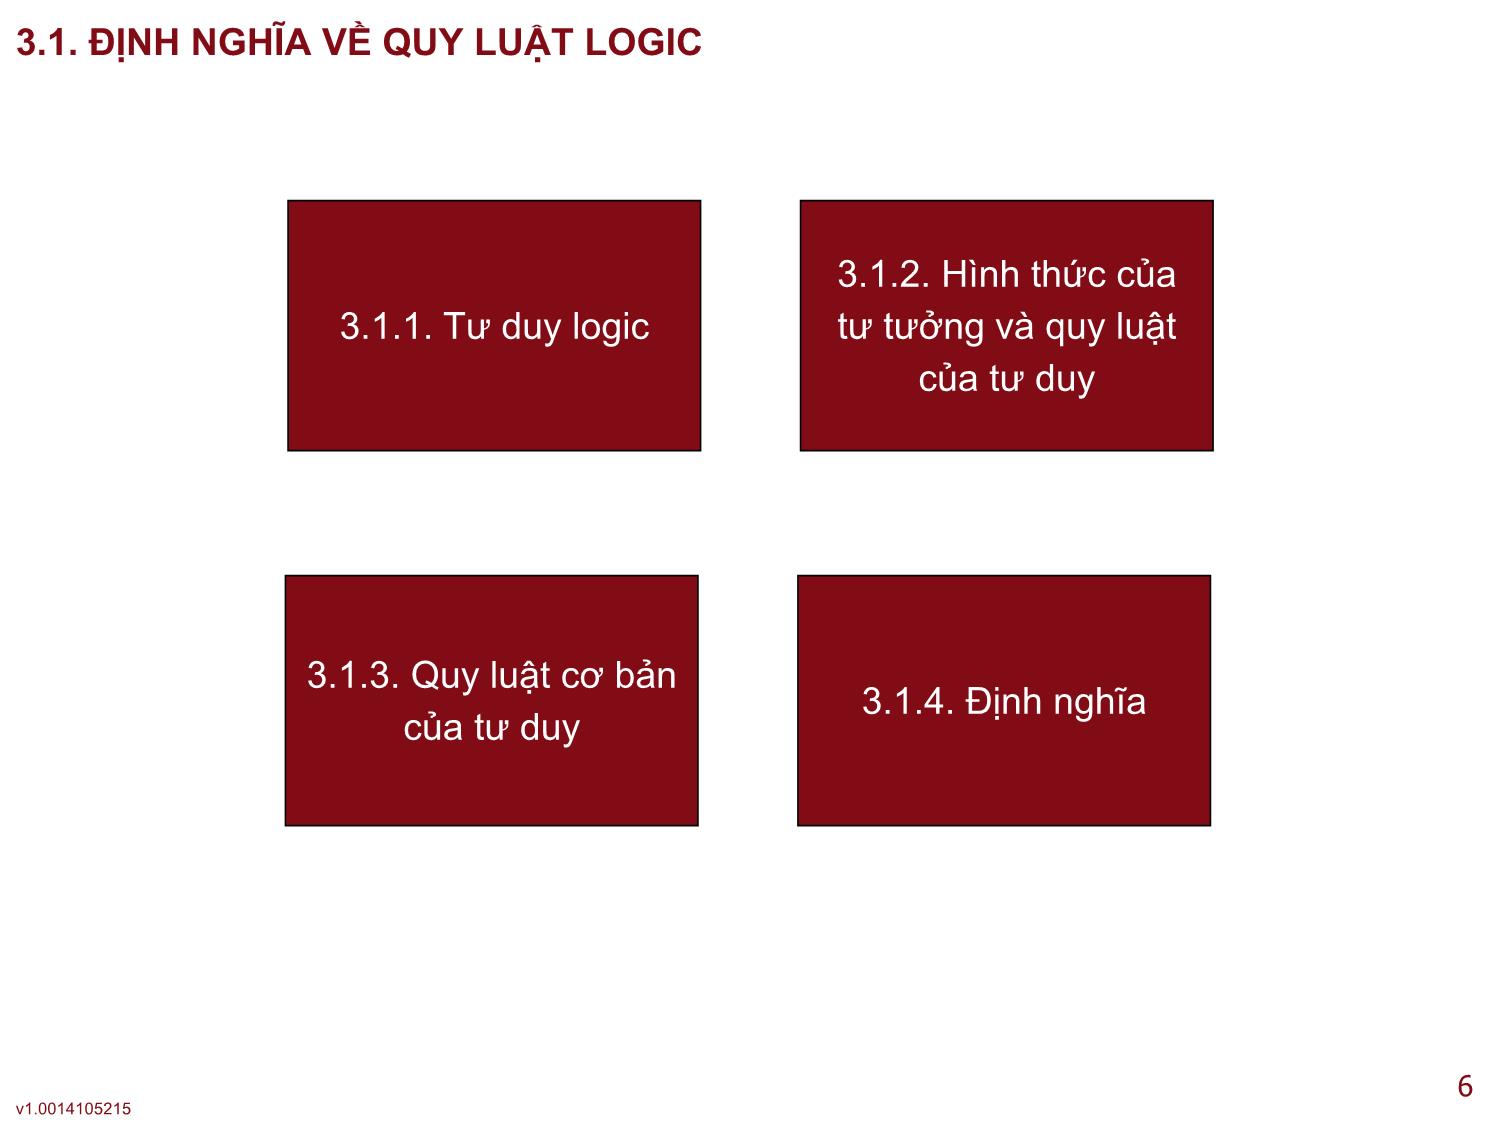 Logic học - Bài 3: Các quy luật cơ bản của tư duy logic hình thức trang 6